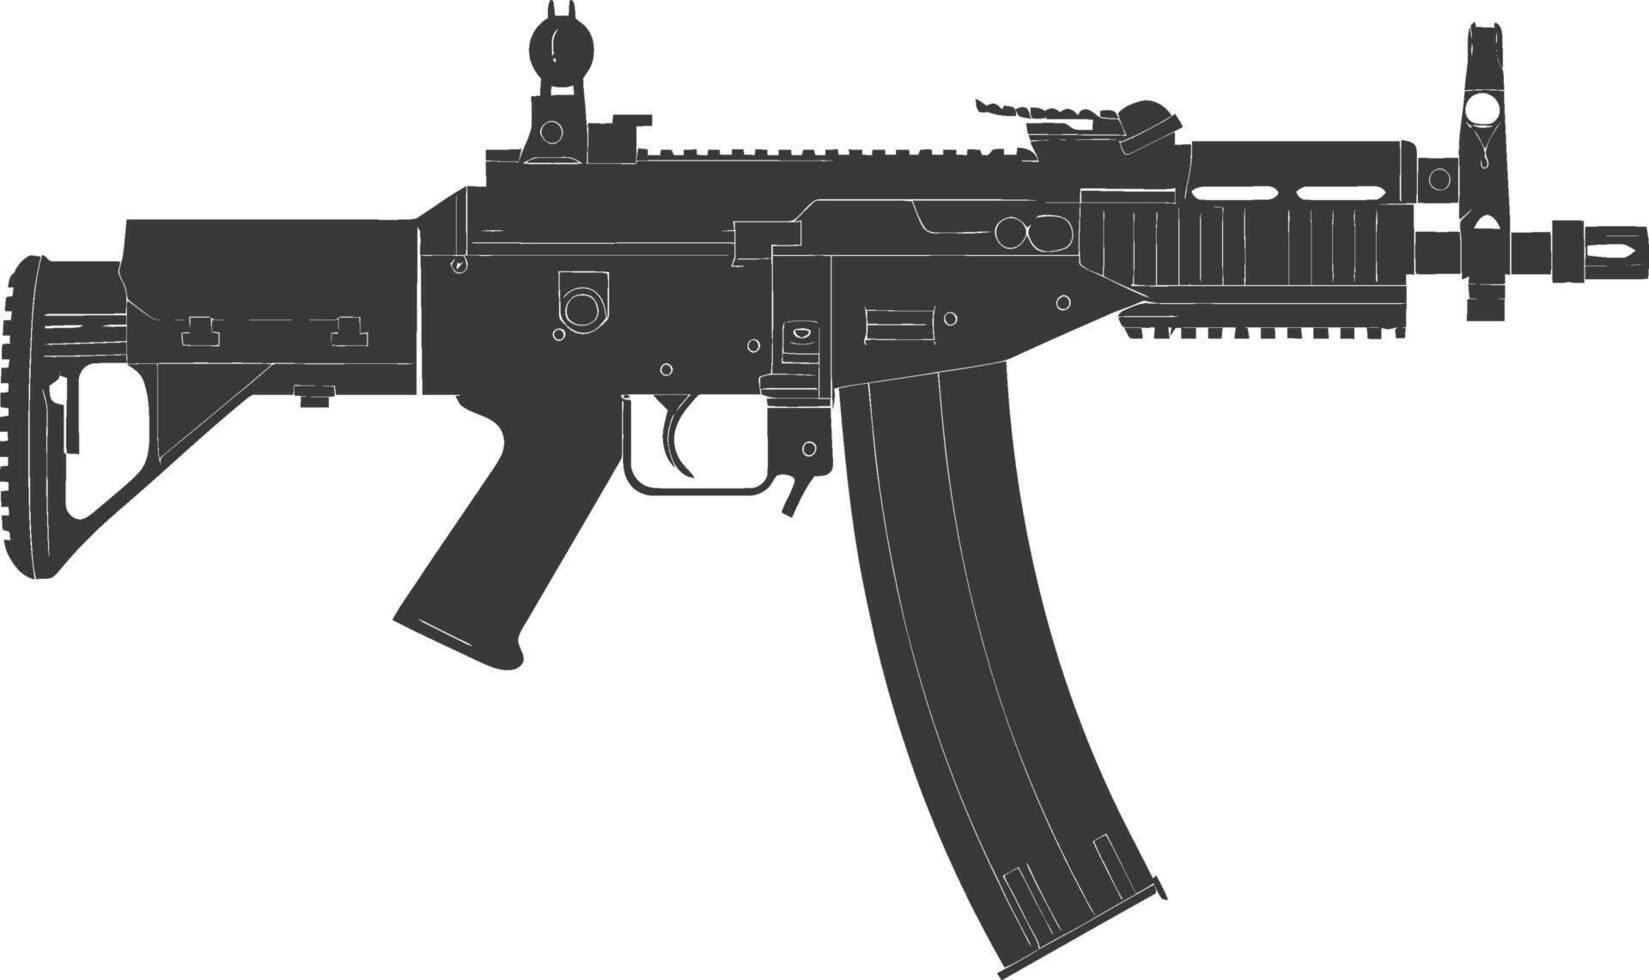 silhouette mitragliatore pistola militare arma nero colore solo vettore